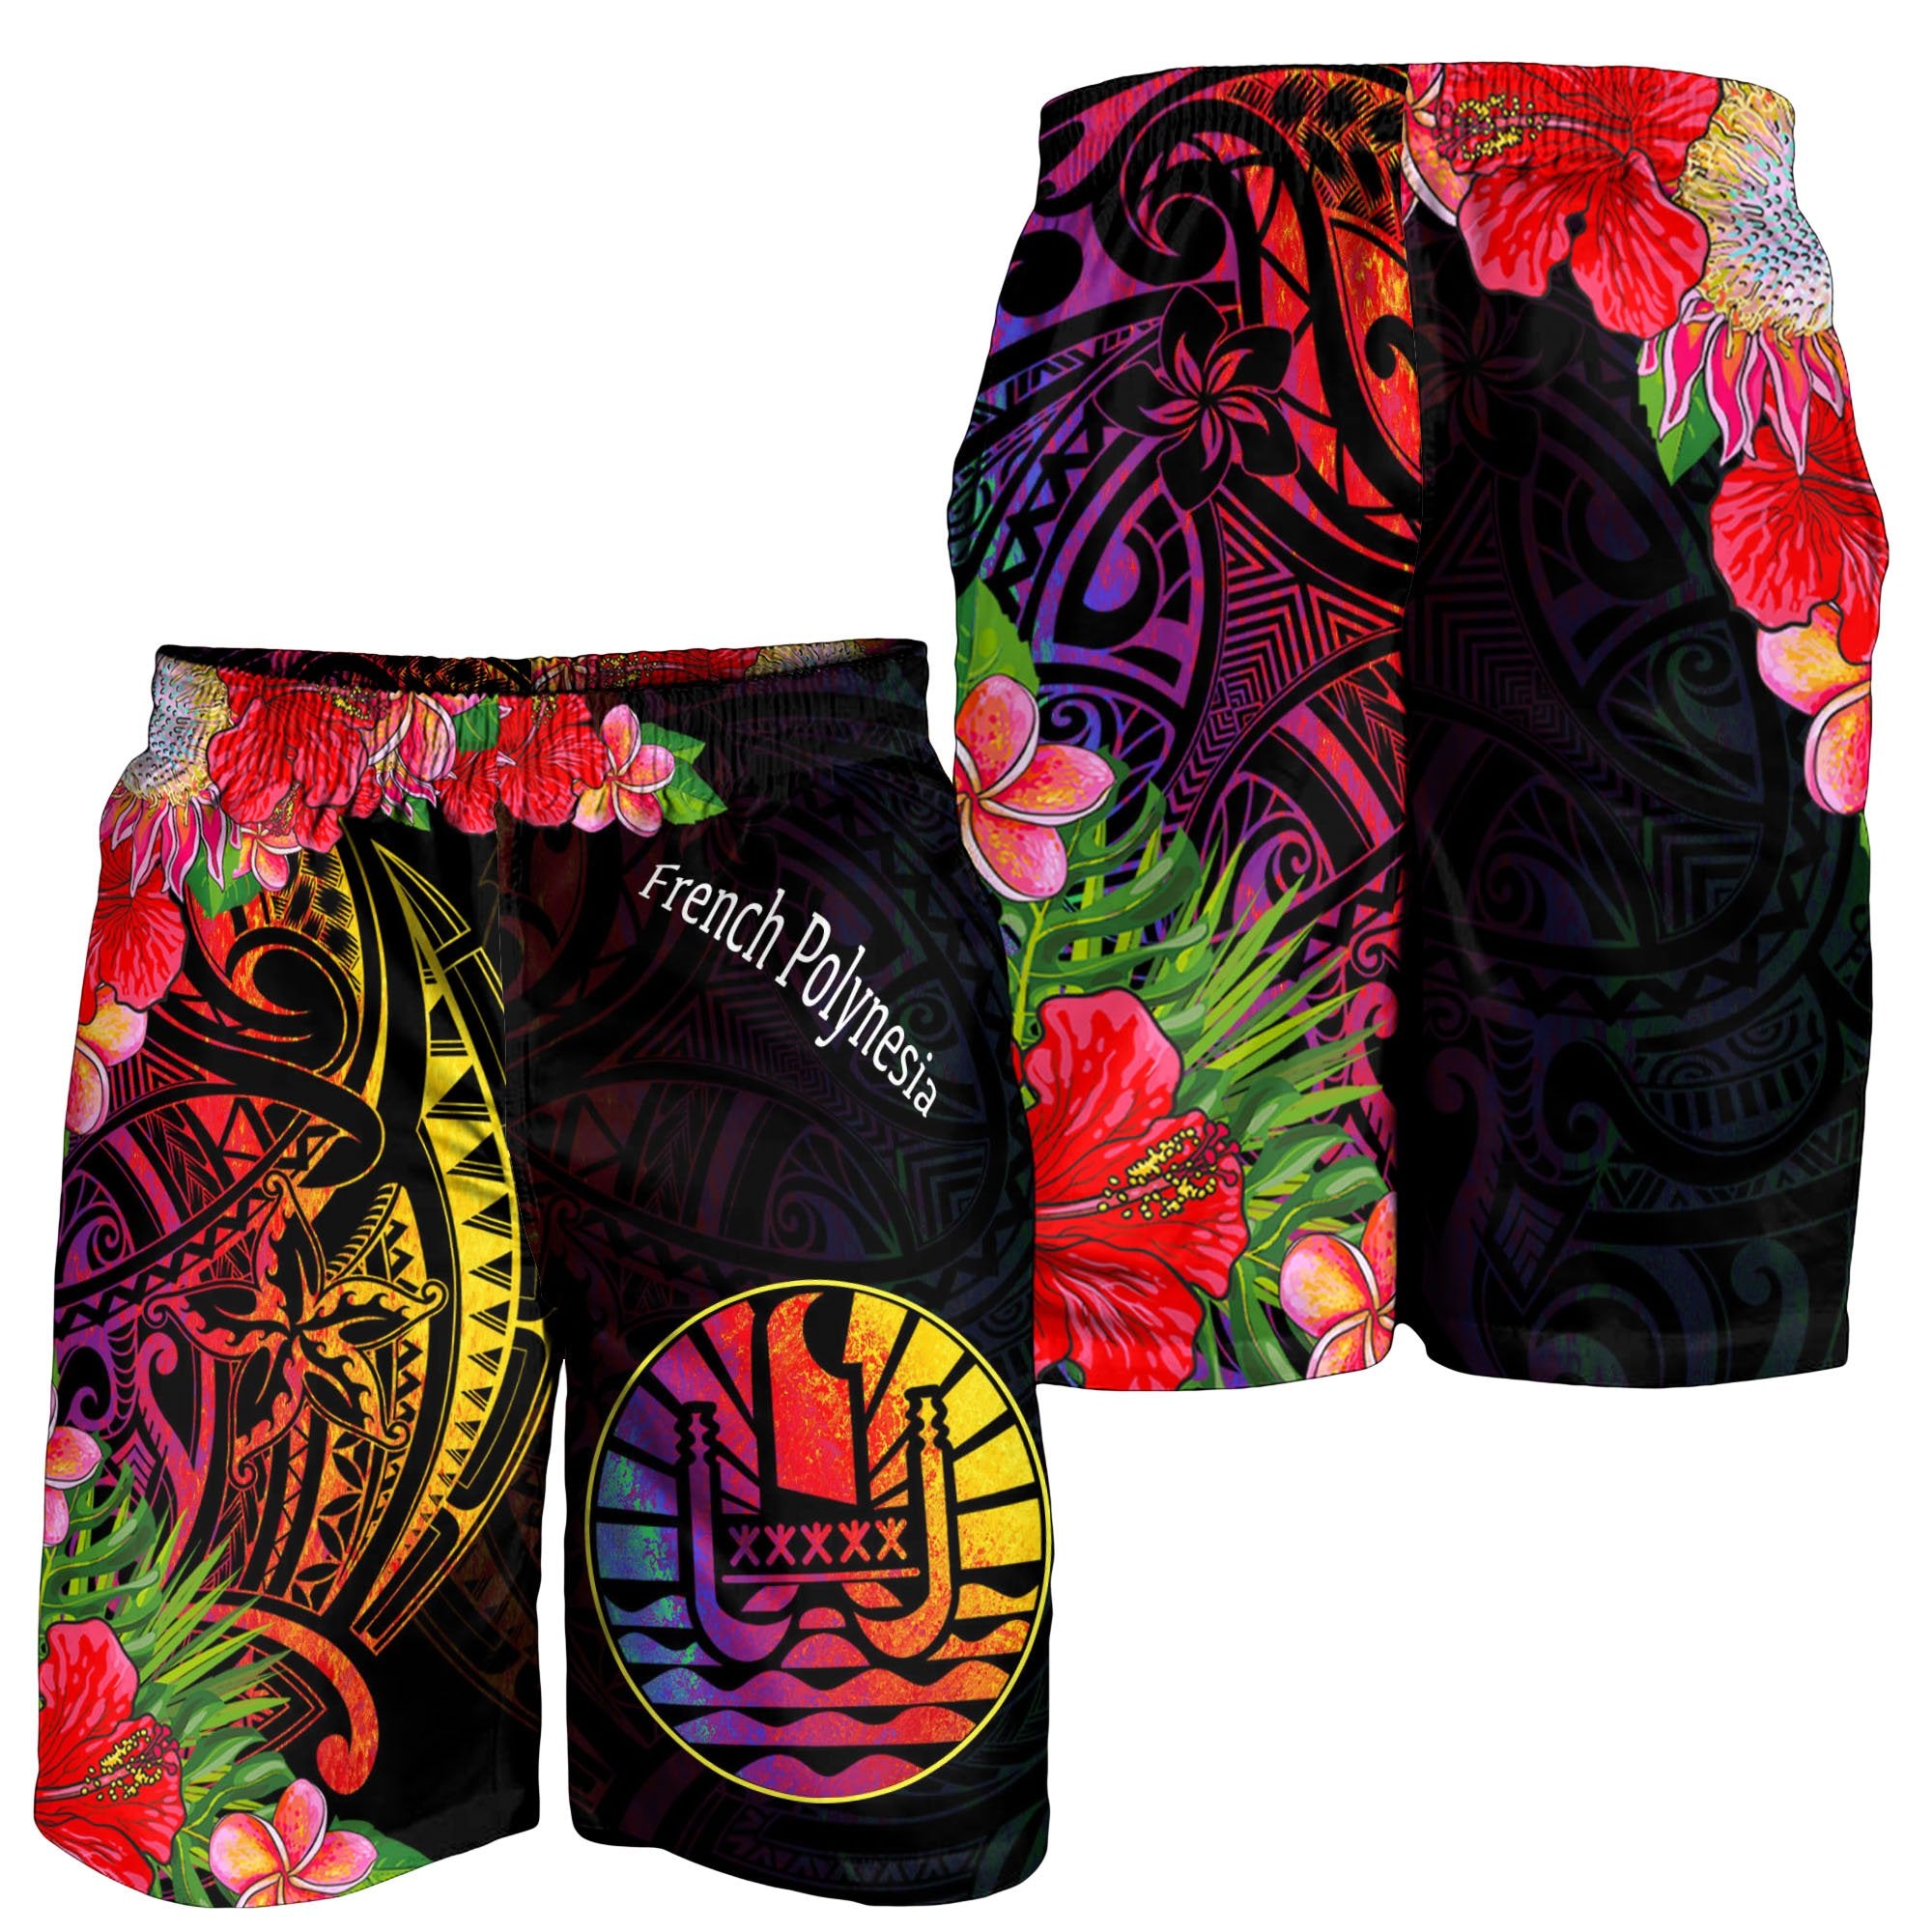 French Polynesia Men's Shorts - Tropical Hippie Style Black - Polynesian Pride